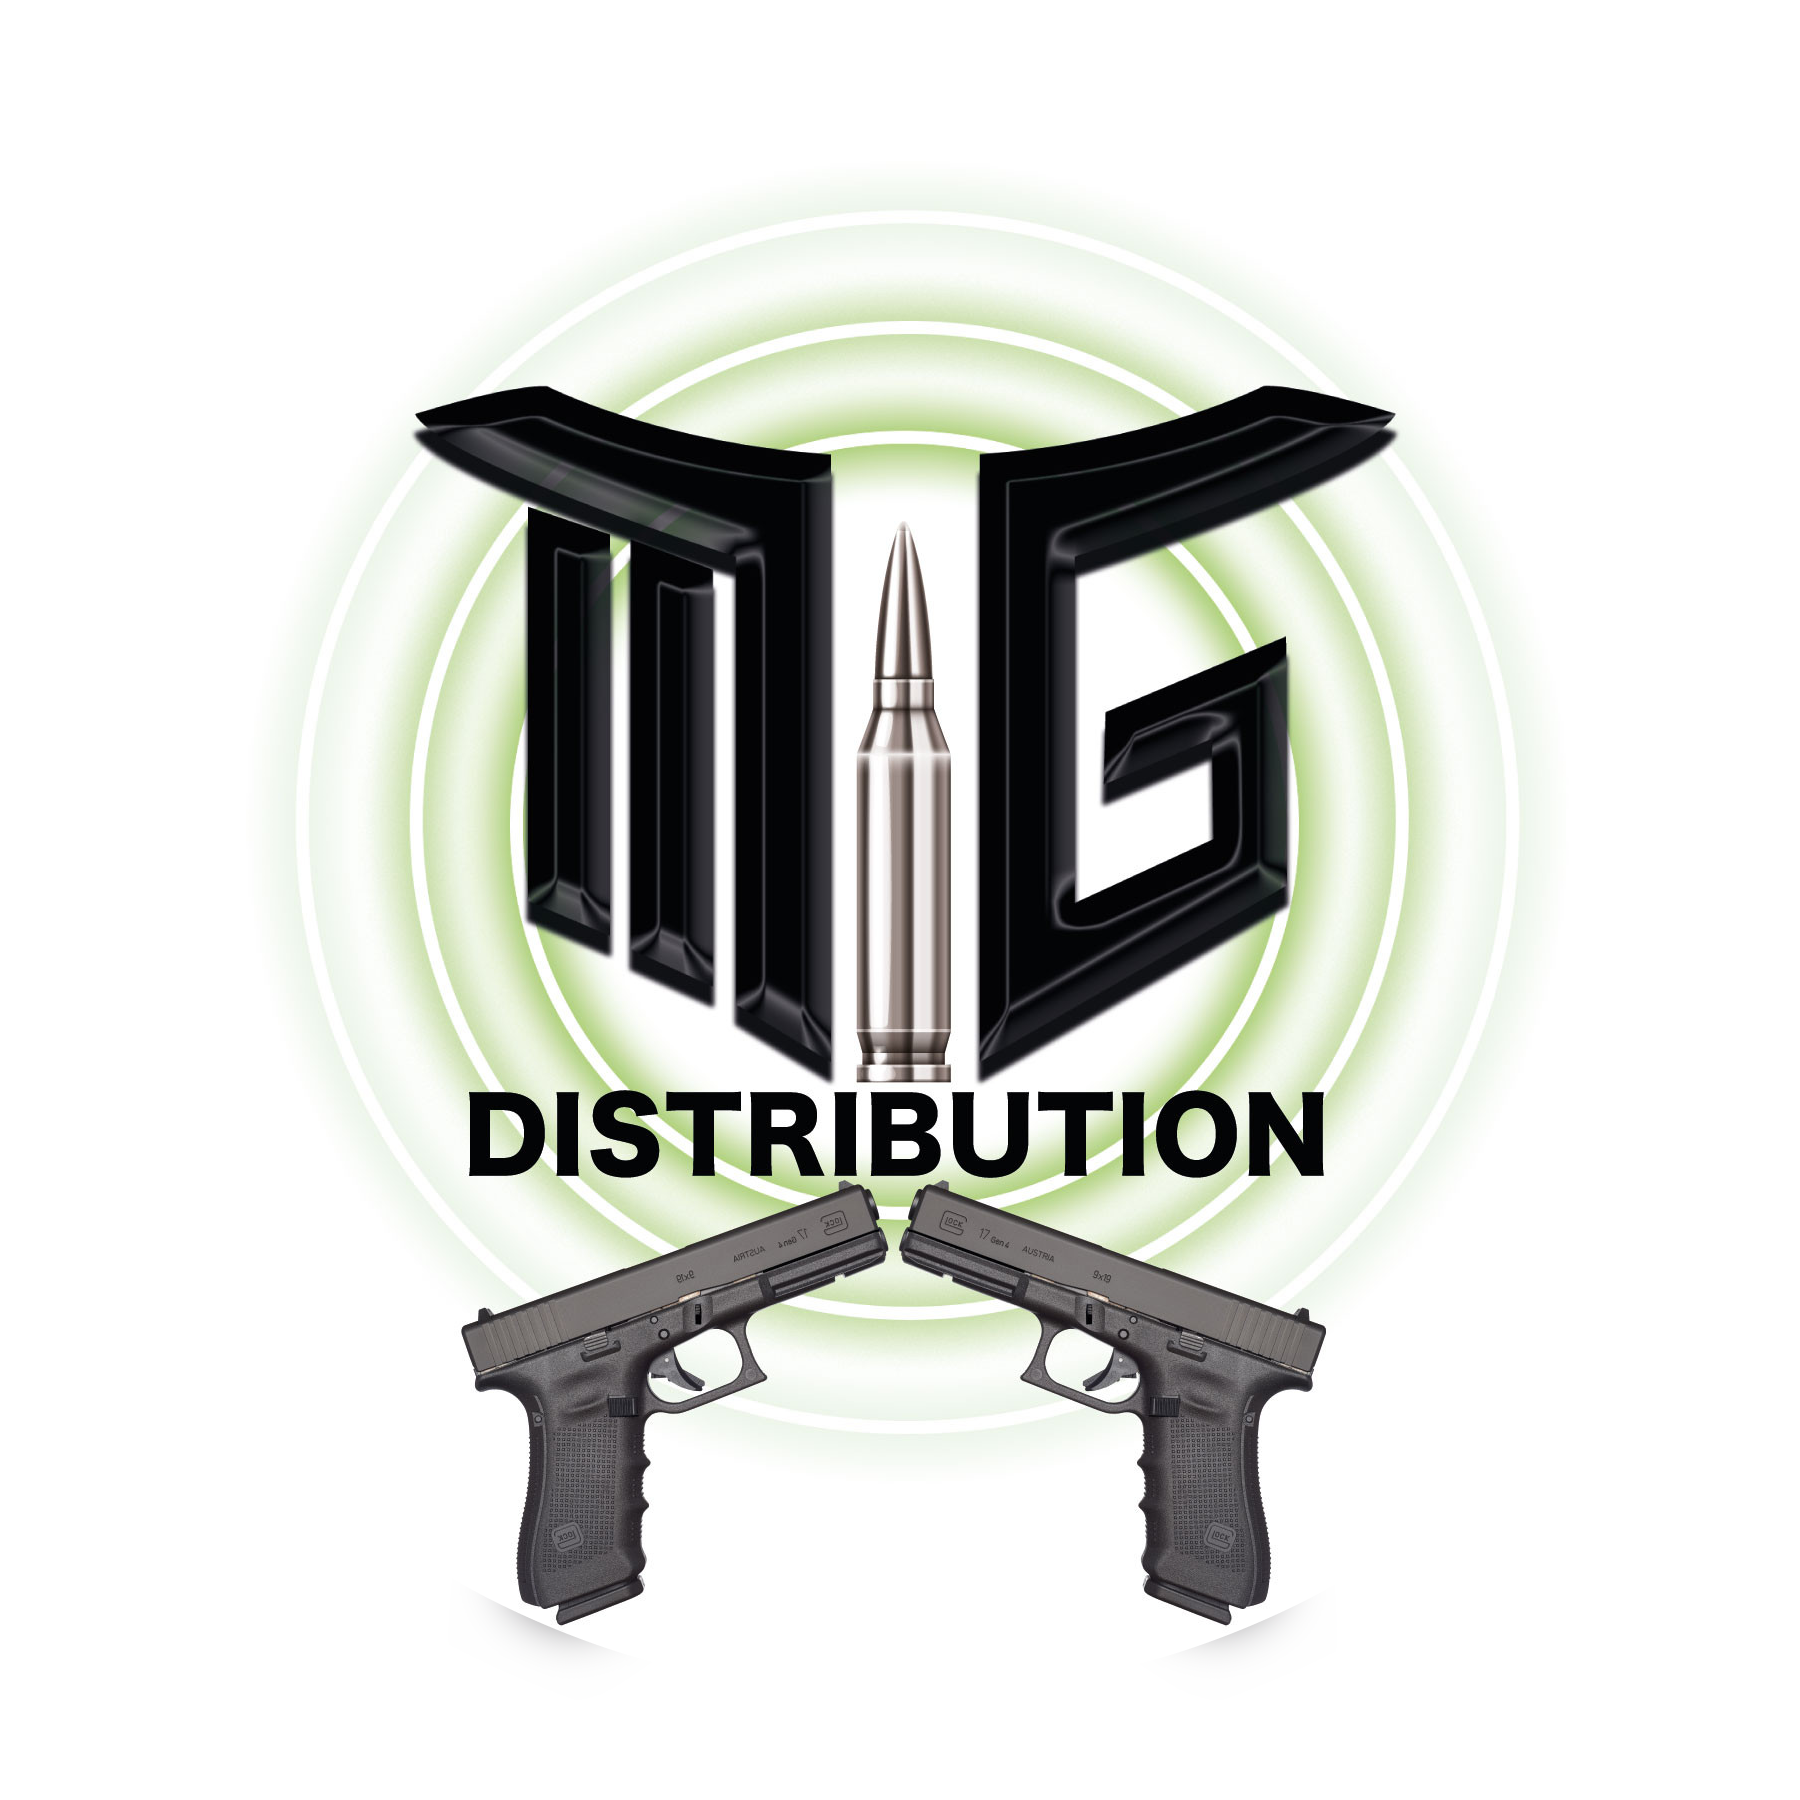 MG Distribution